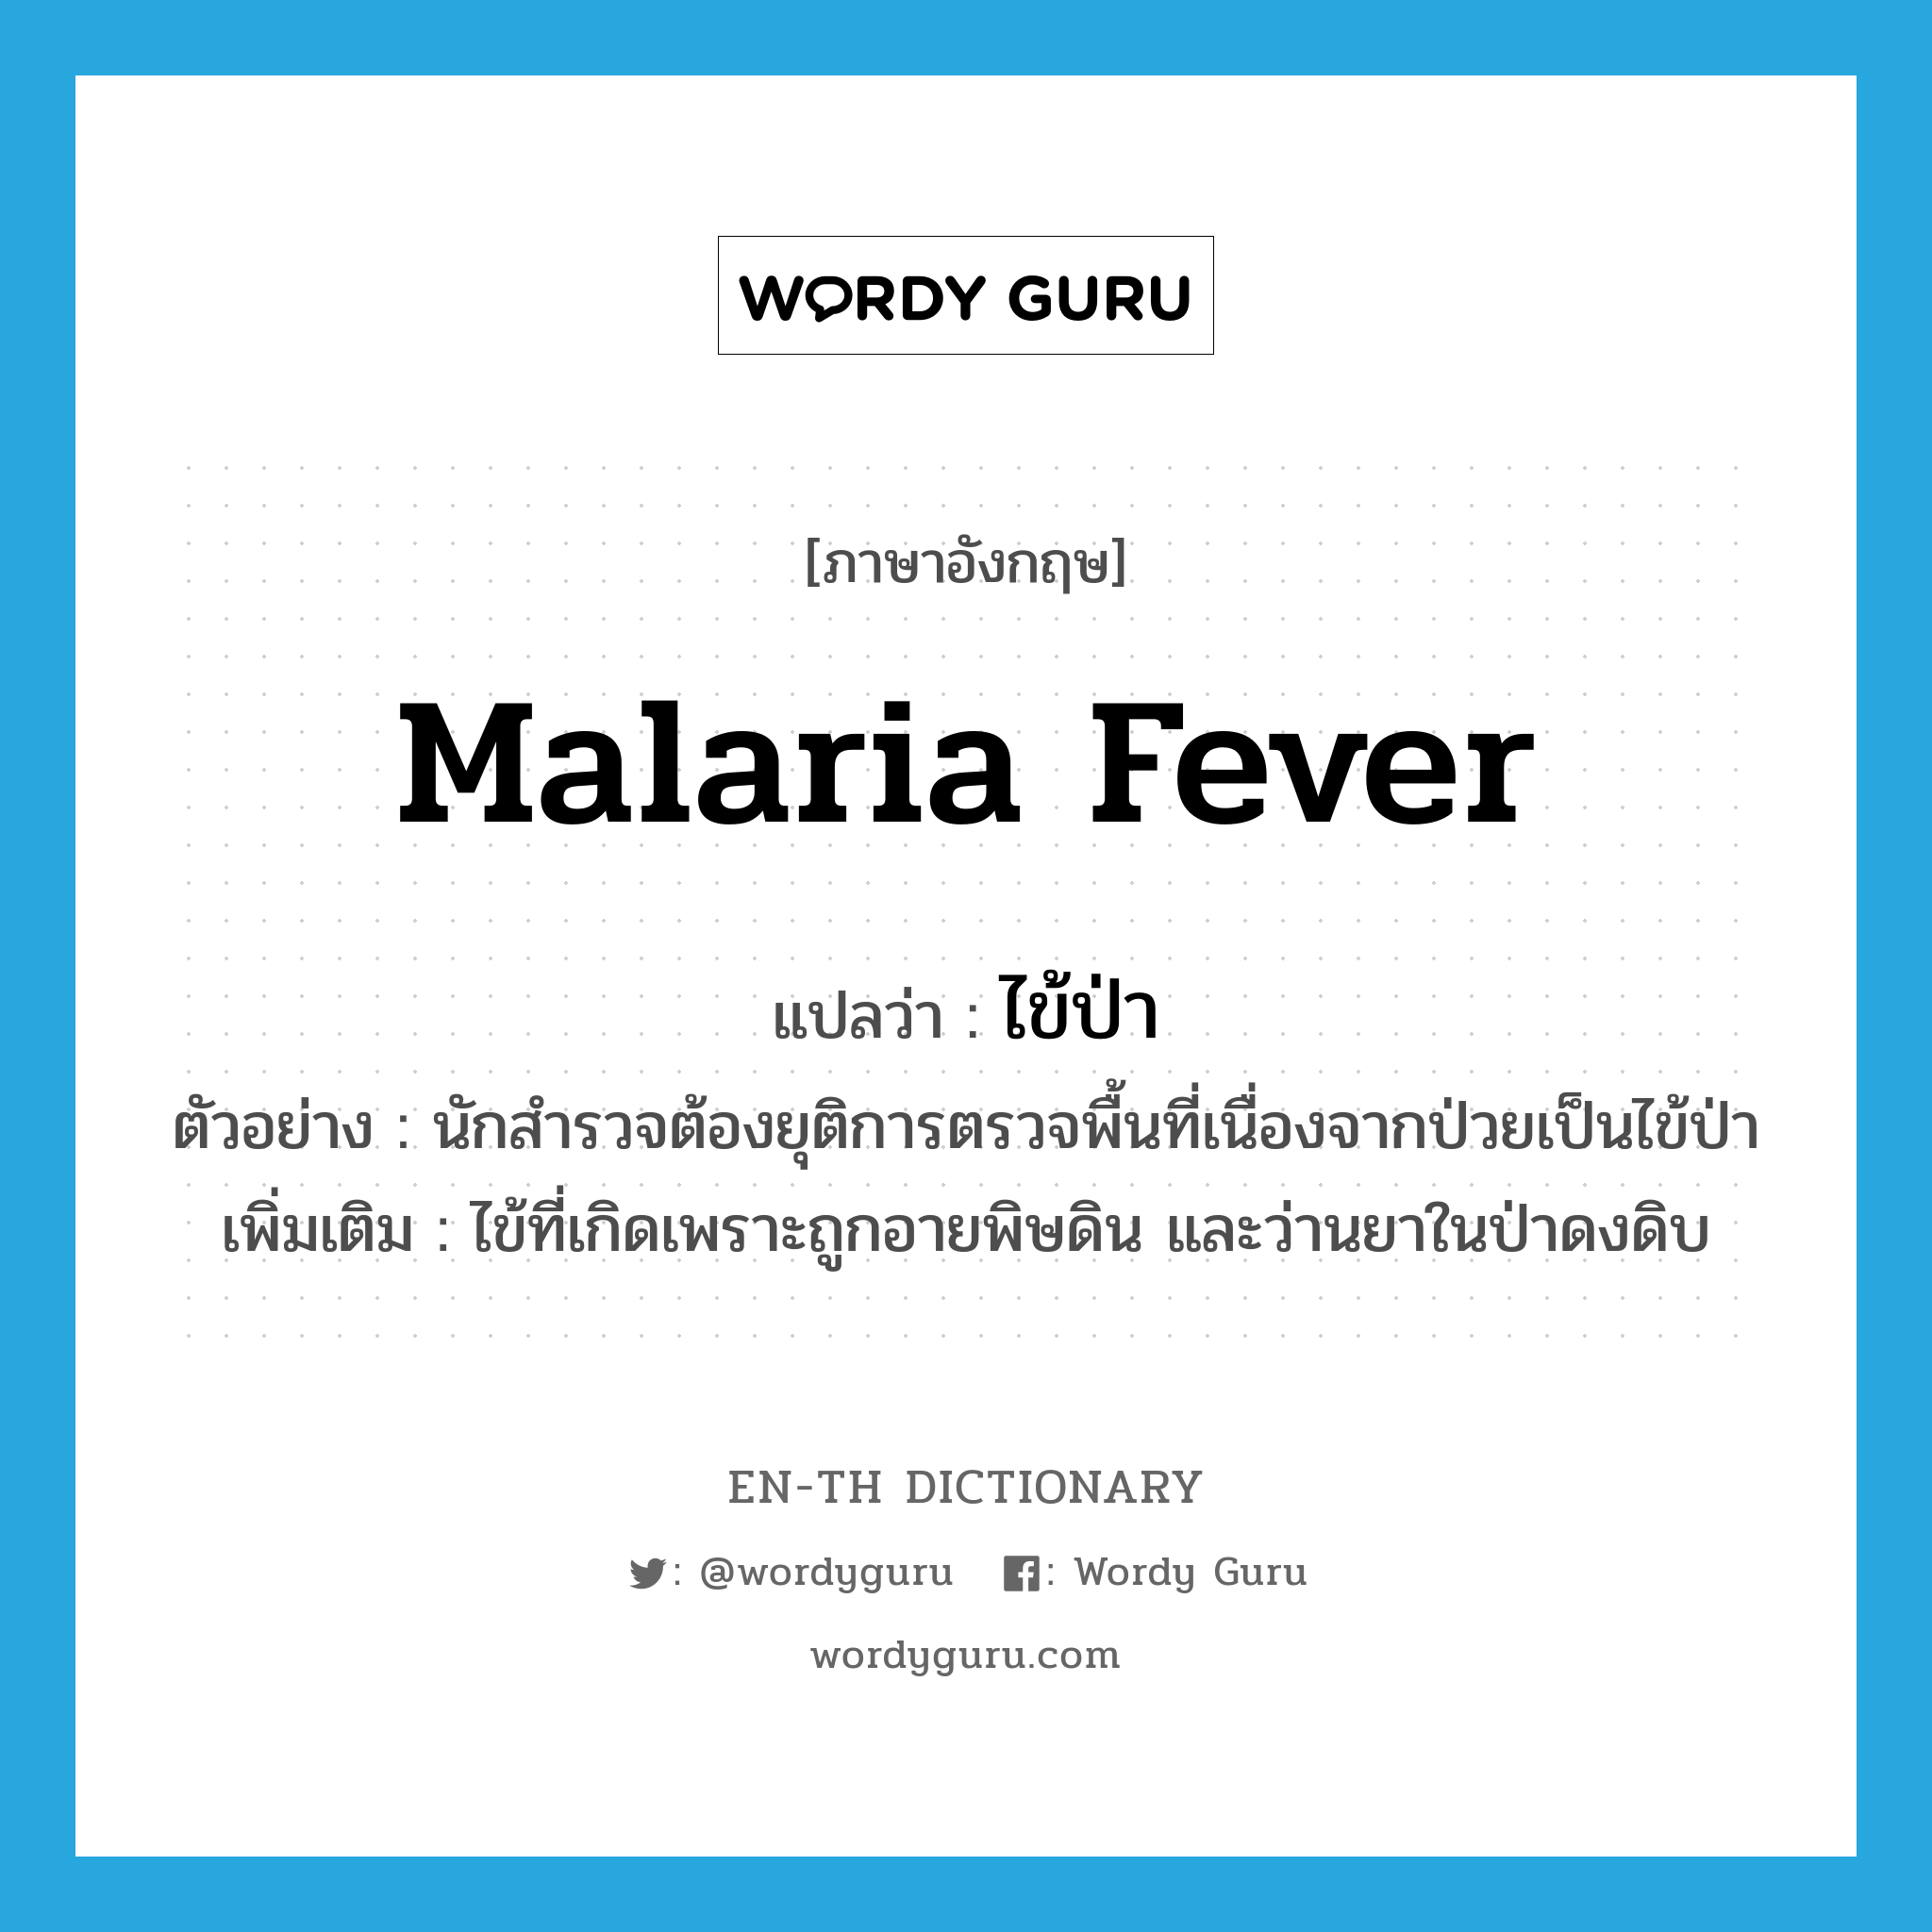 ไข้ป่า ภาษาอังกฤษ?, คำศัพท์ภาษาอังกฤษ ไข้ป่า แปลว่า malaria fever ประเภท N ตัวอย่าง นักสำรวจต้องยุติการตรวจพื้นที่เนื่องจากป่วยเป็นไข้ป่า เพิ่มเติม ไข้ที่เกิดเพราะถูกอายพิษดิน และว่านยาในป่าดงดิบ หมวด N